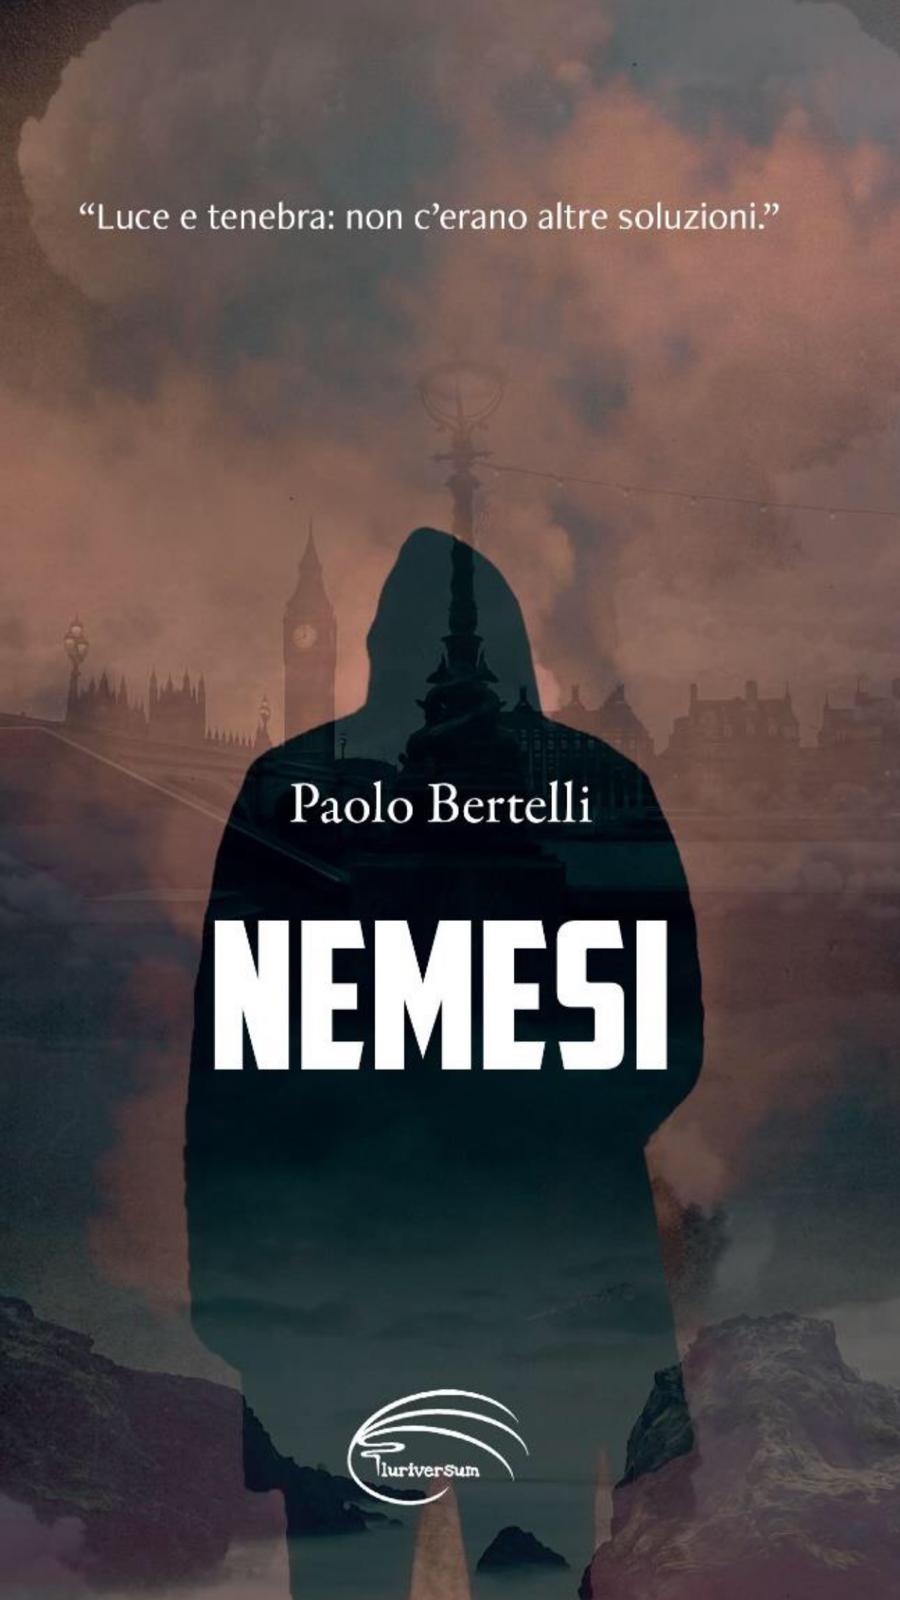 07/02/2022 – “NEMESI” INTERVISTA A PAOLO BERTELLI